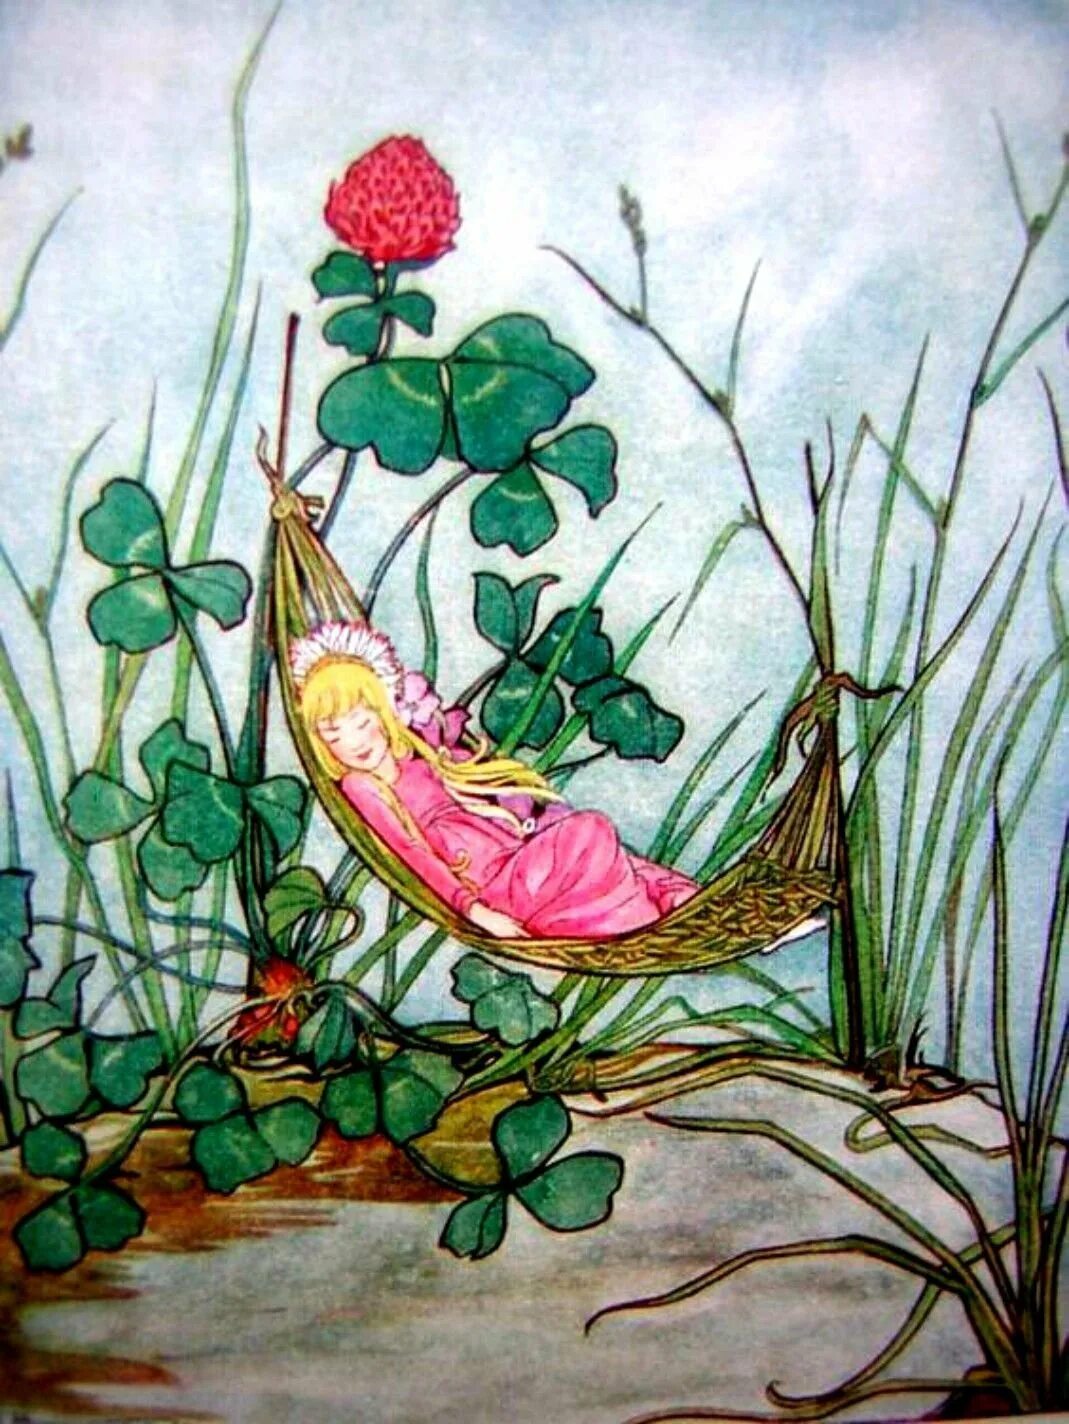 Андерсен х.к. "Thumbelina". Дюймовочка иллюстрации Вильгельма Педерсена.